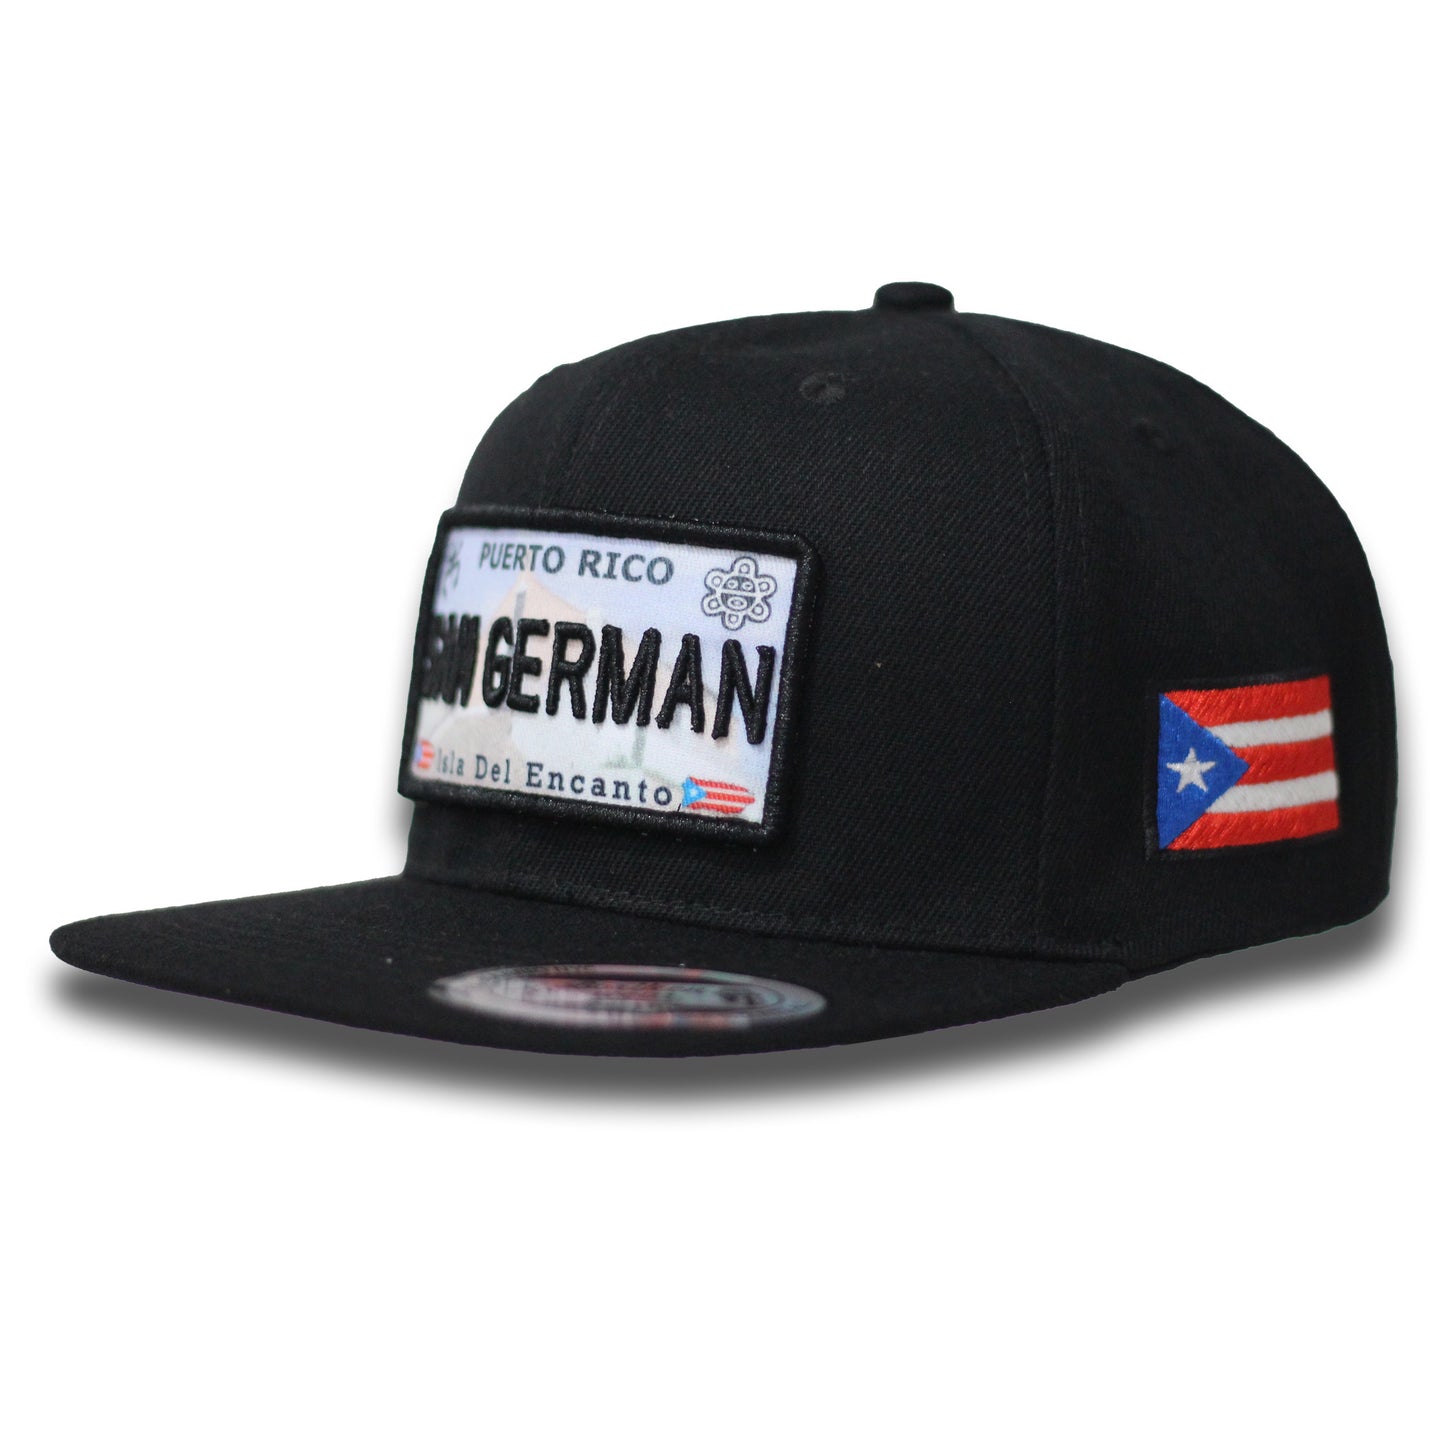 San Germán Hat